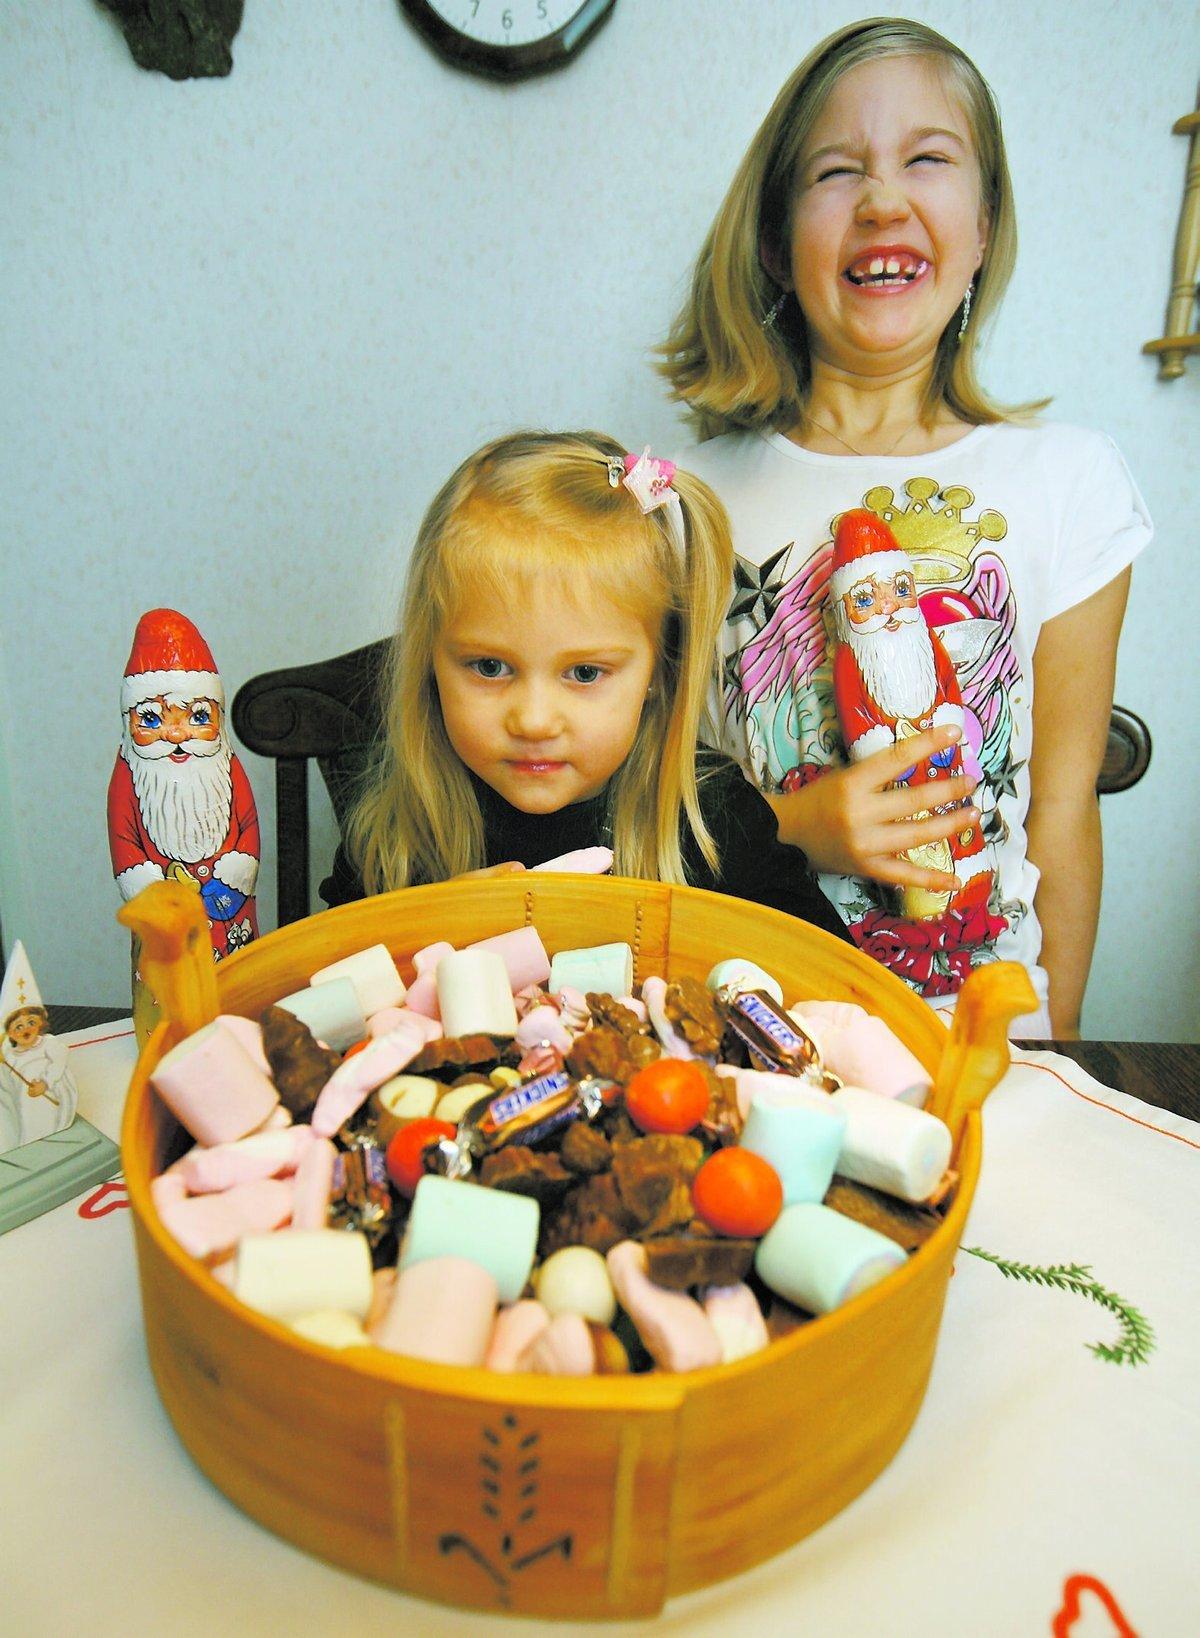 lugna och glada Tindra, 4, och Tanja, 7, äter gärna lite julgodis. Men de blir inte hyperaktiva, stressade eller ens piggare av sockerchocken. ” Nä, det har jag aldrig märkt”, säger Tanja.